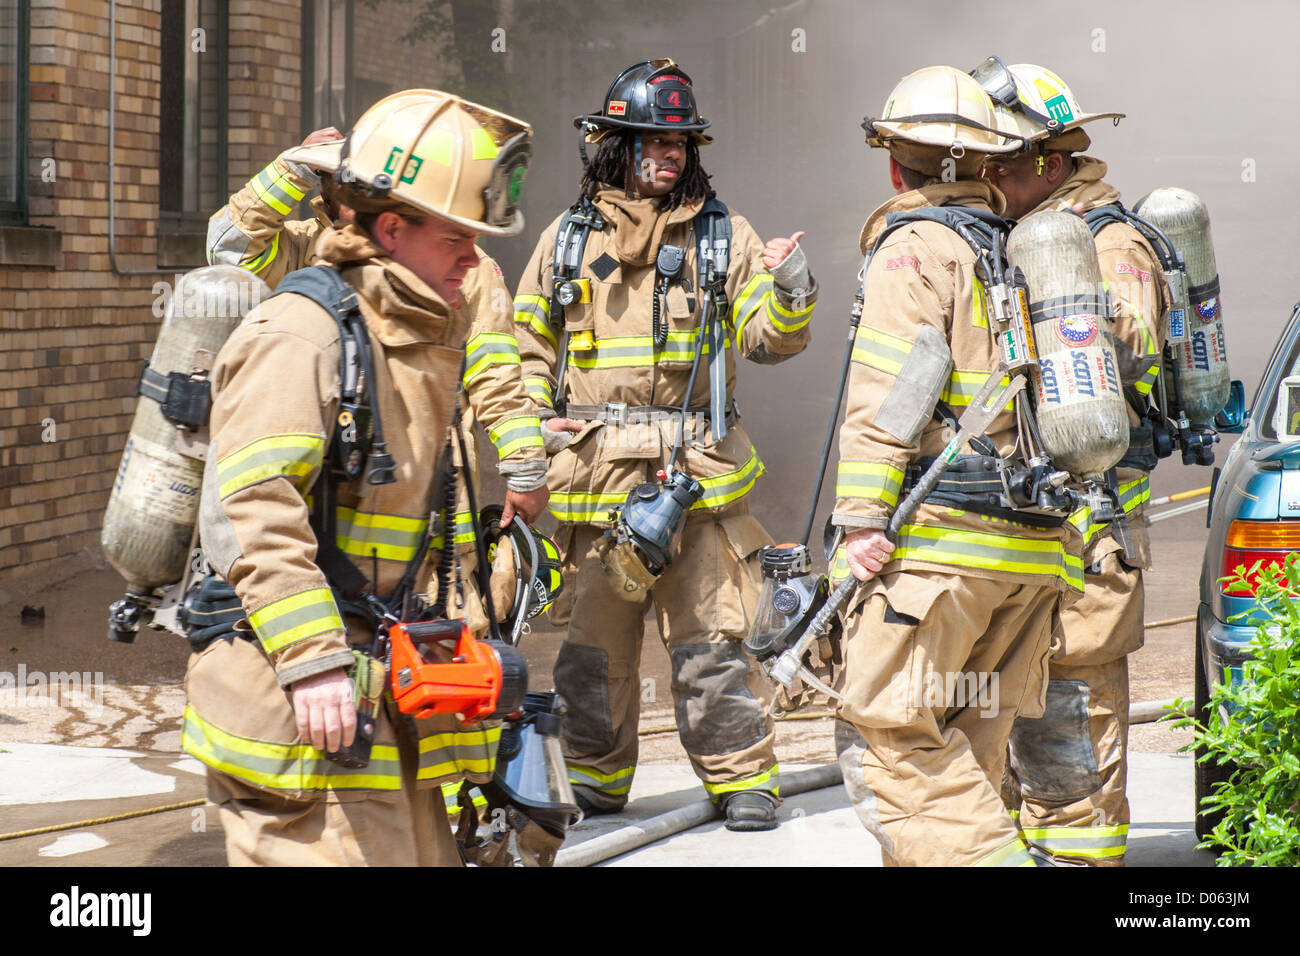 Amerikanische Feuerwehrleute, Rettungsteam vor einem brennenden Gebäude, diskutieren Taktik Strategie. Verschiedene Crew kaukasisch, afroamerikanisch. Stockfoto